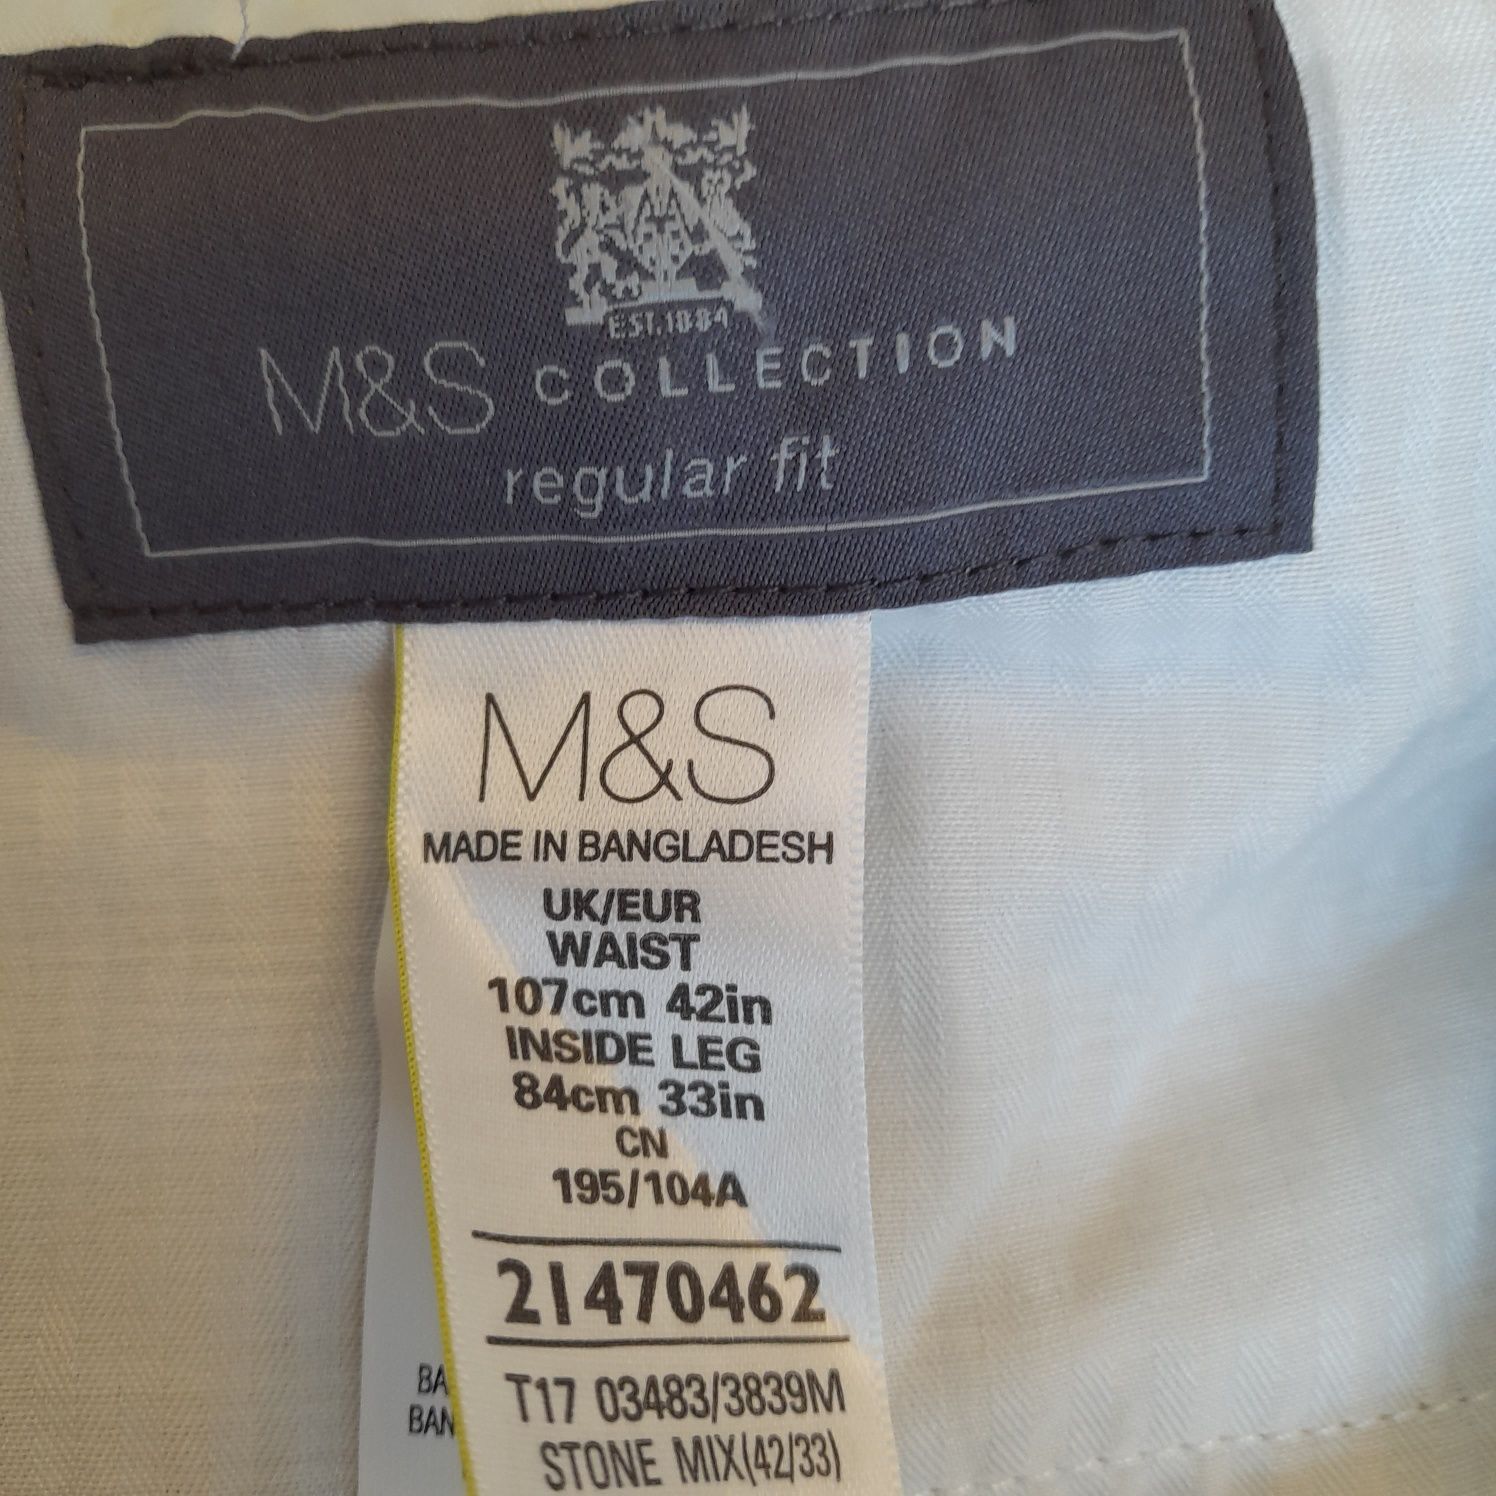 Nowe spodnie męskie firmy M&S w pepitke